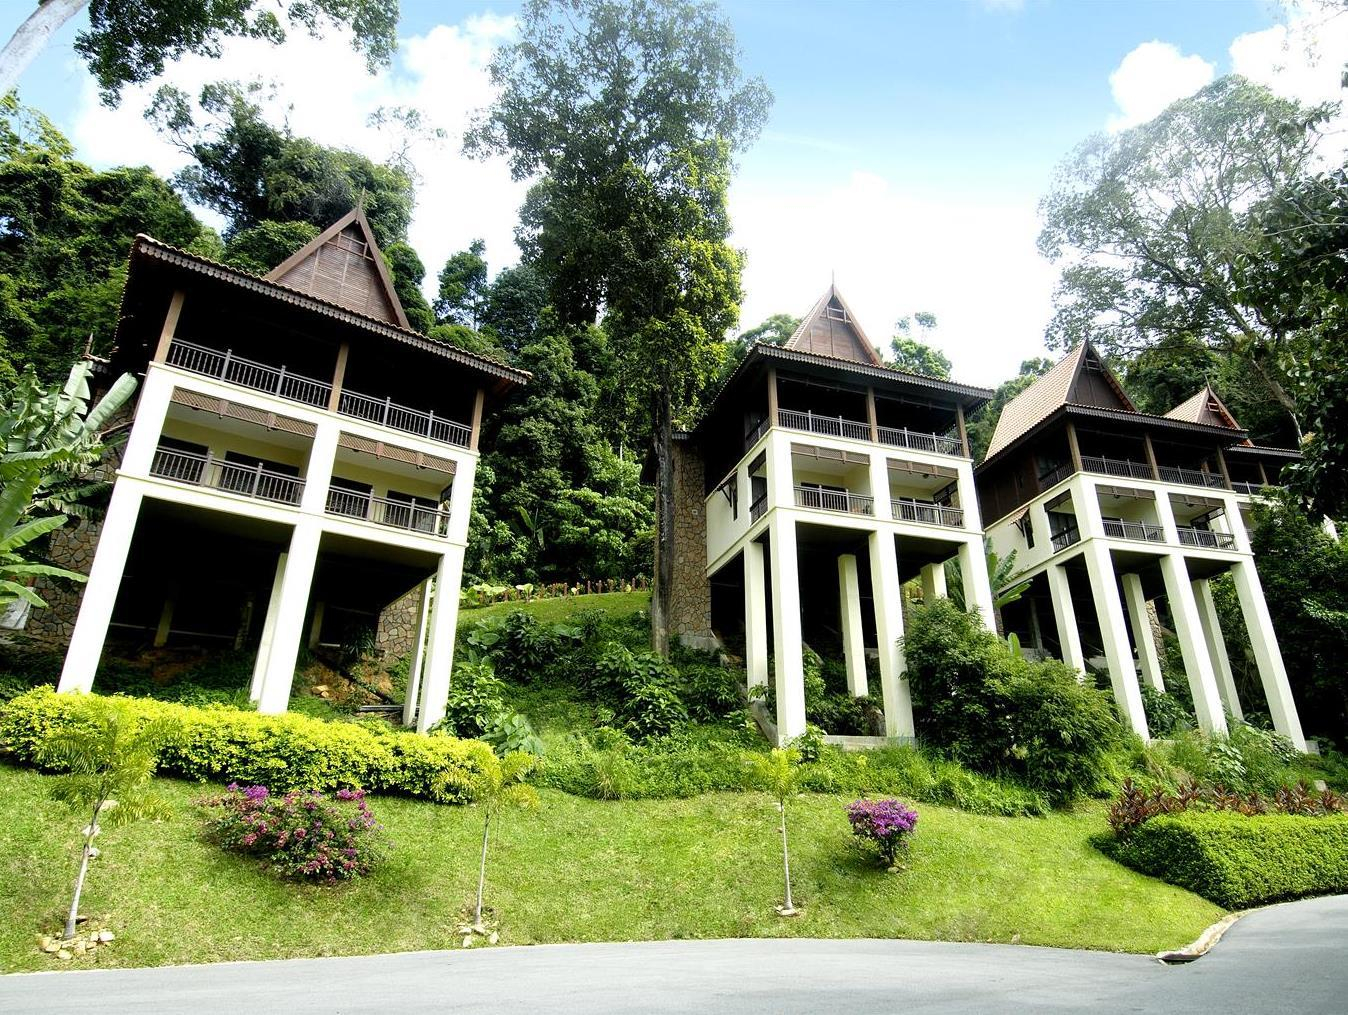 Exterior & Views 2, Berjaya Langkawi Resort, Langkawi